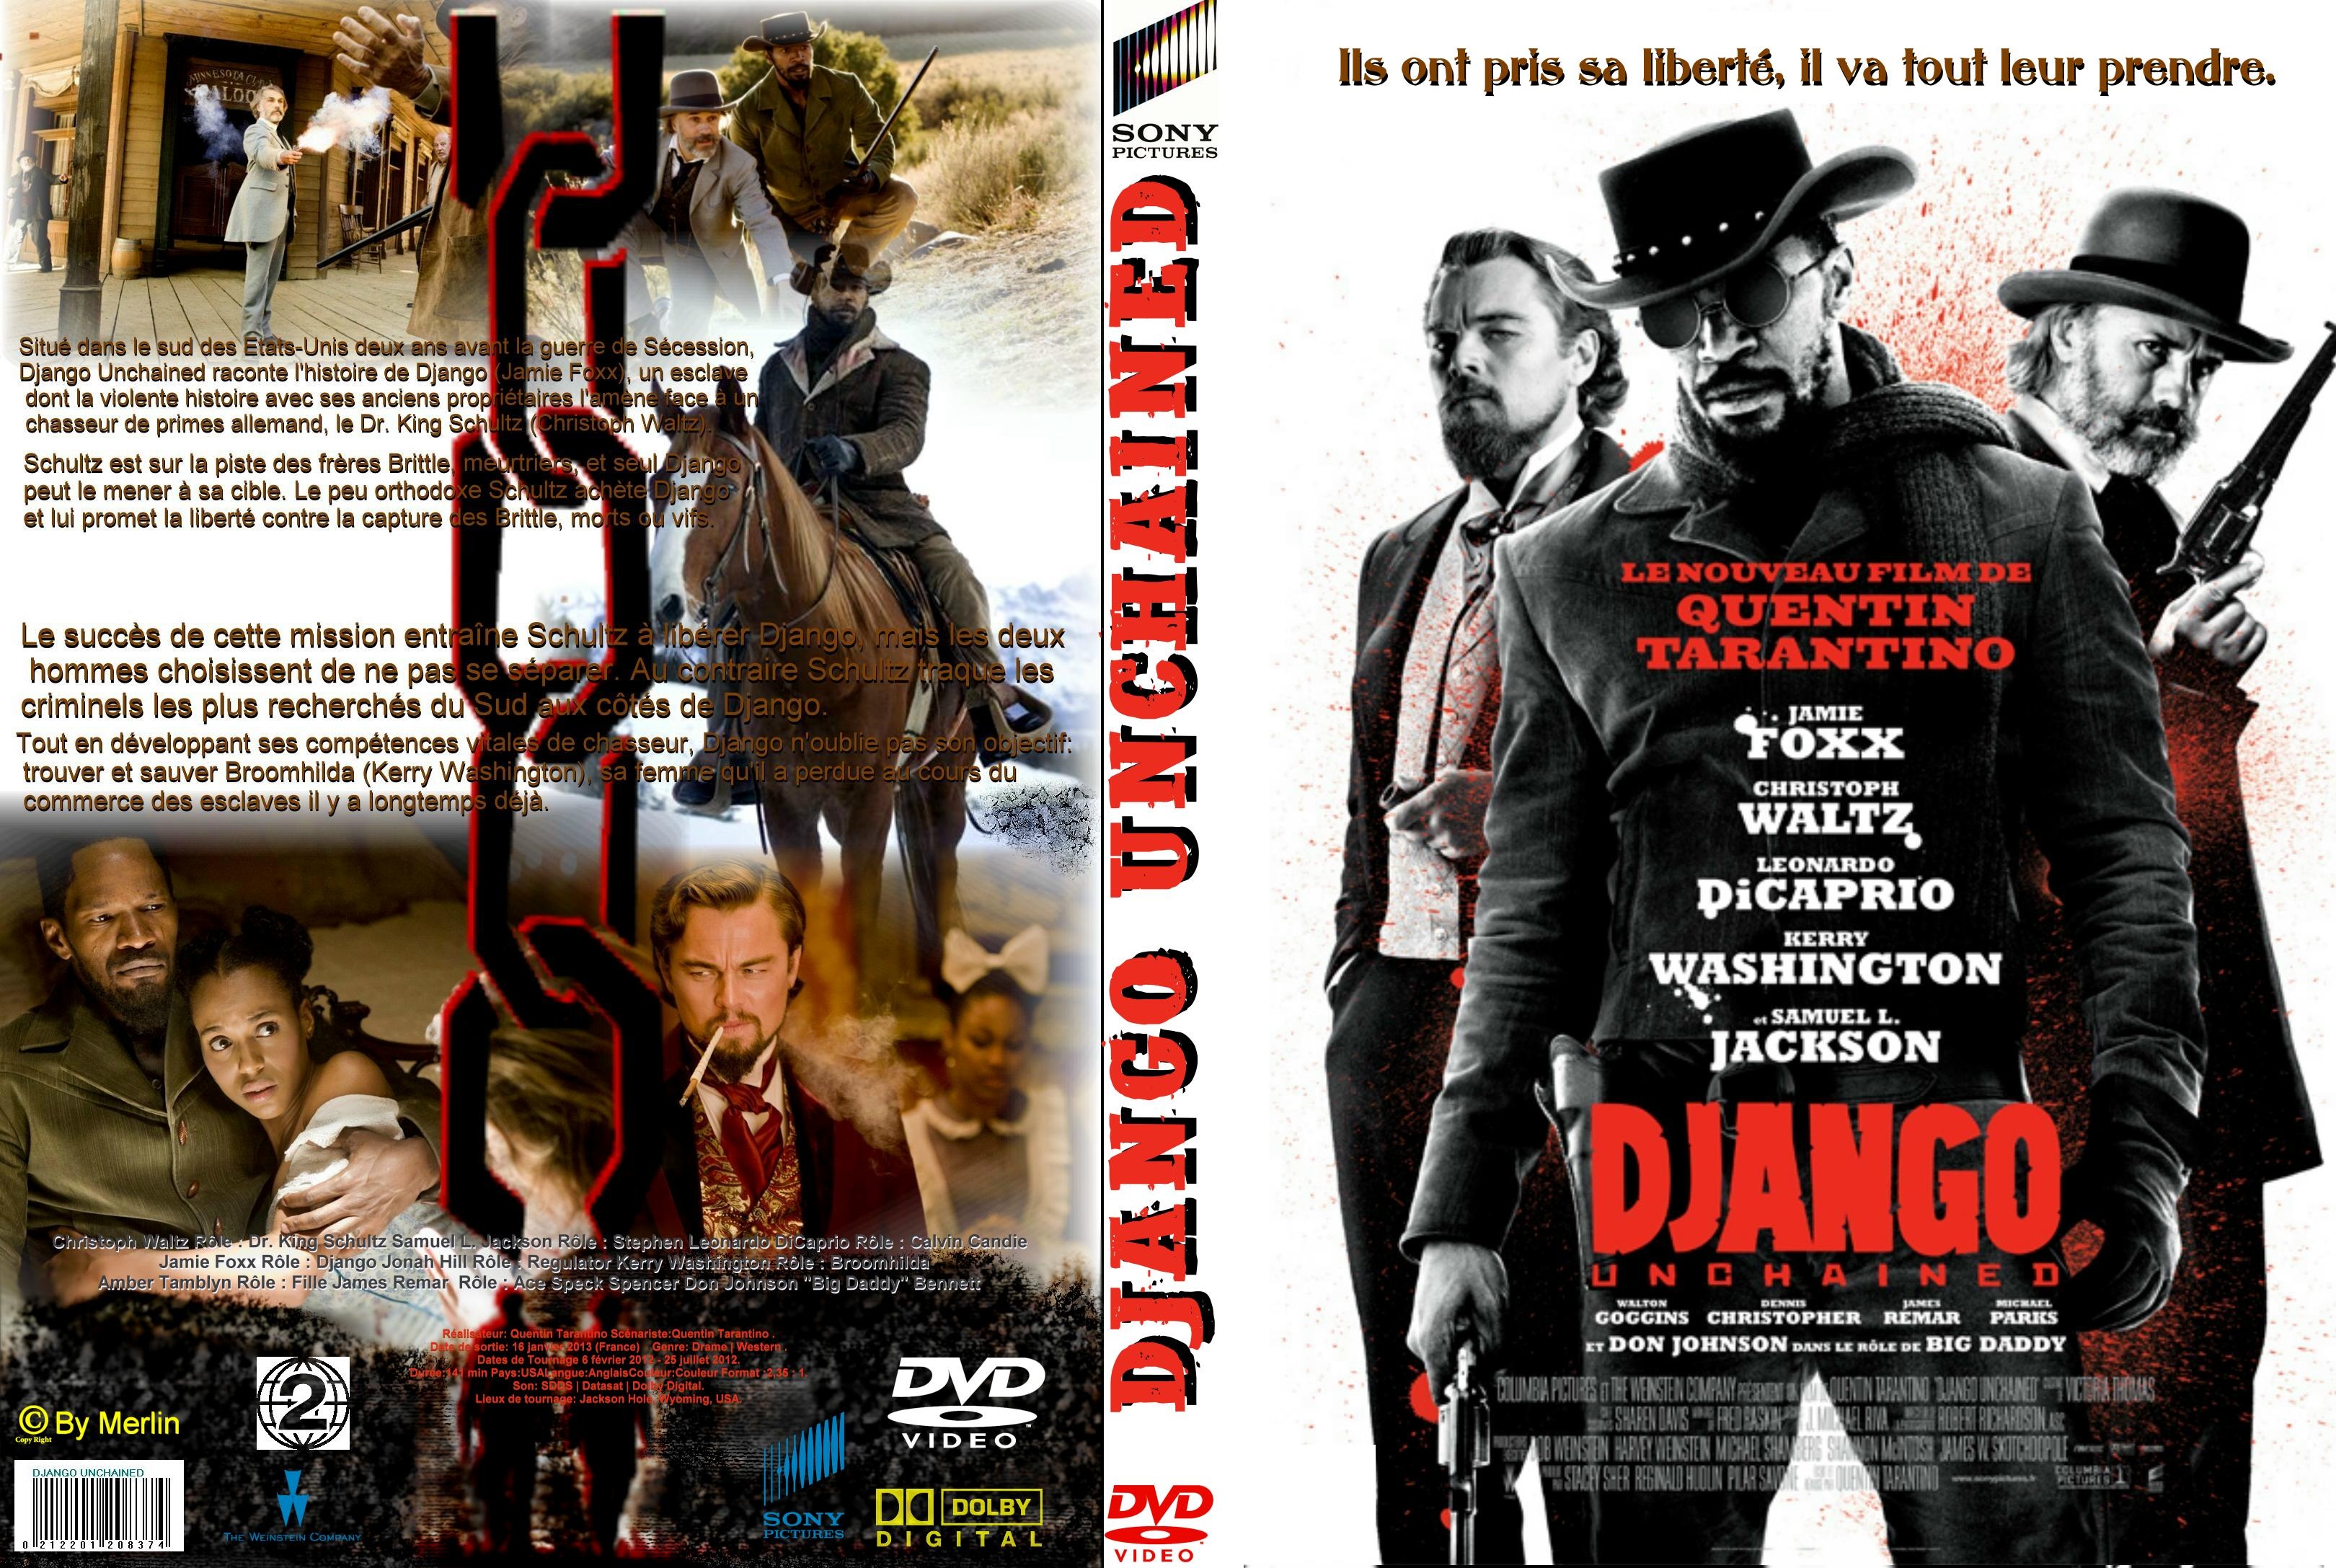 Jaquette DVD Django unchained custom